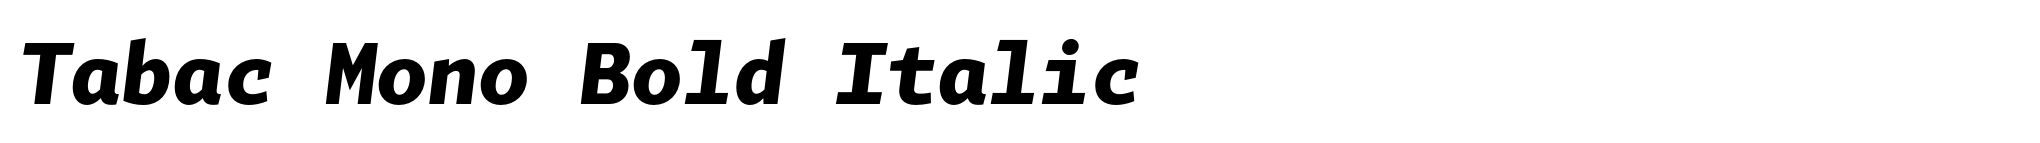 Tabac Mono Bold Italic image